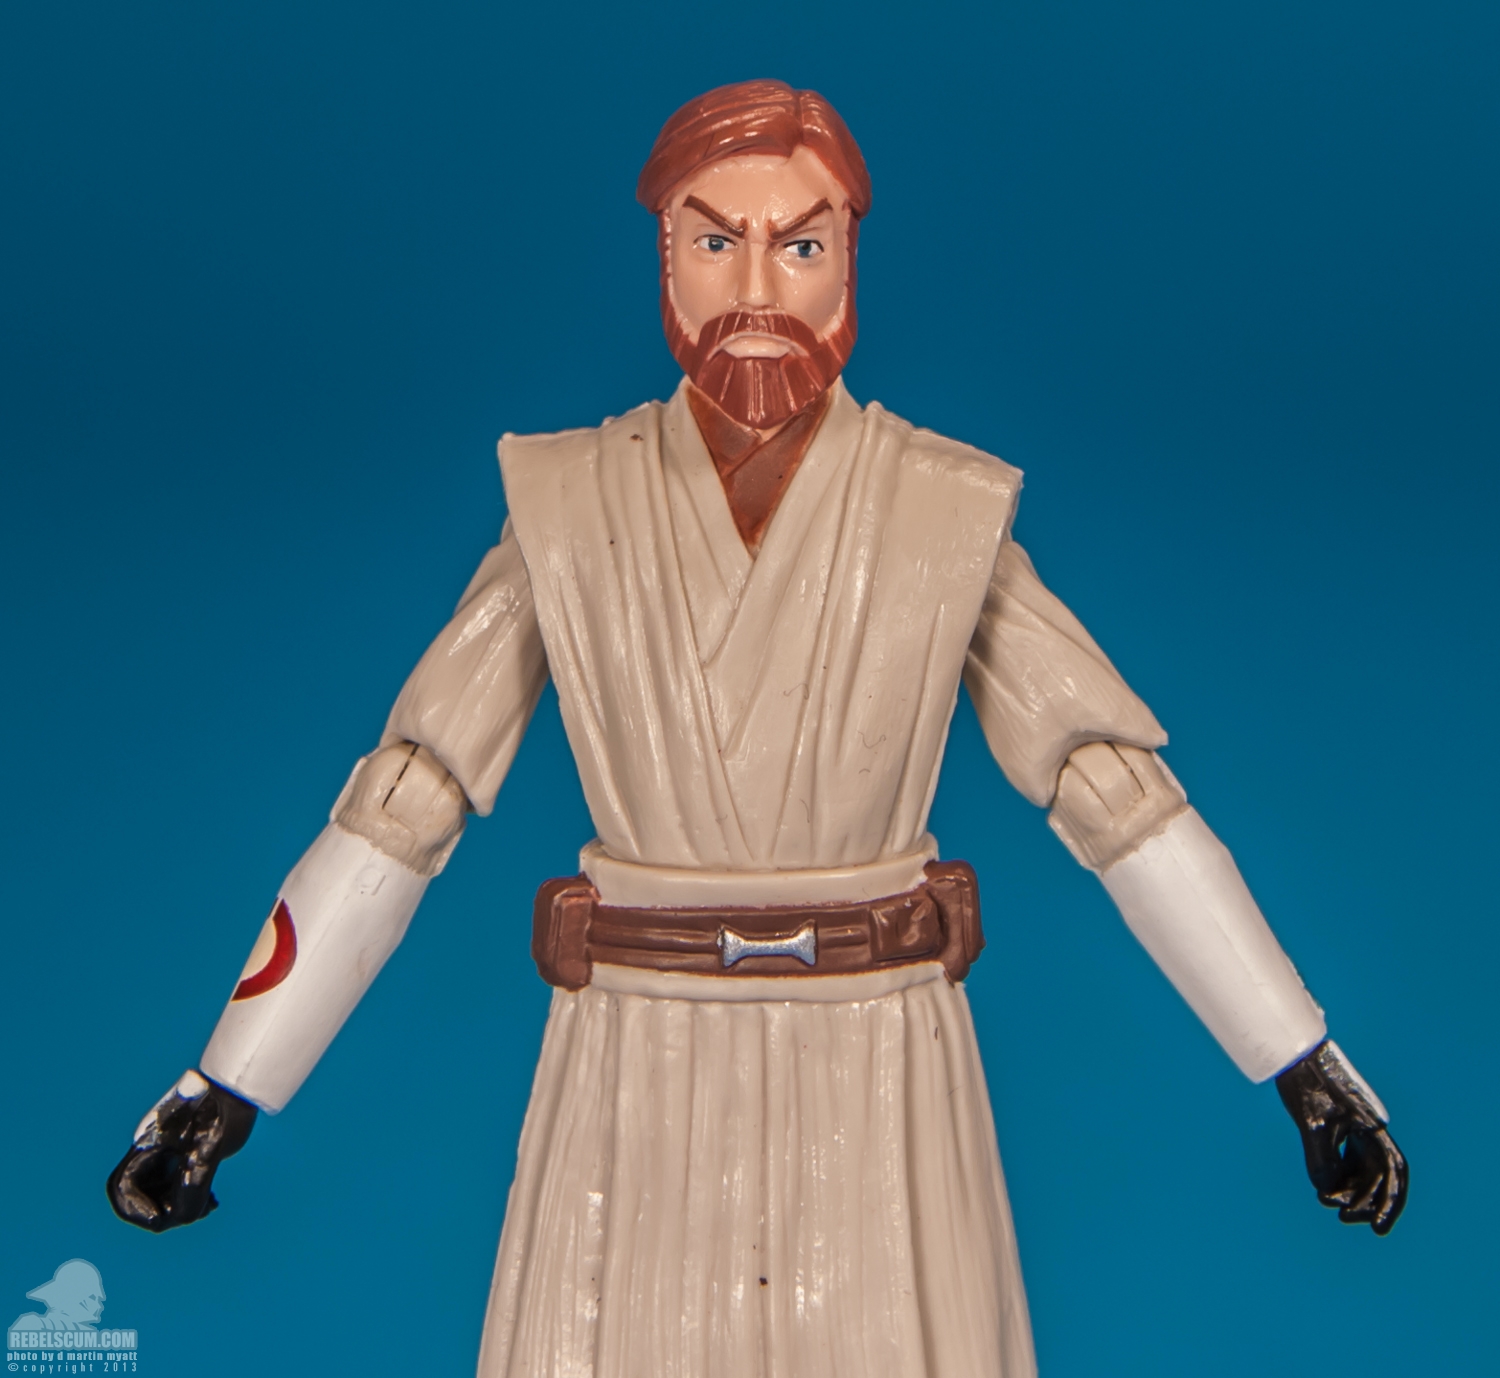 CW01_2013_Obi-Wan_Kenobi_ The_Clone_Wars_Star_Wars_Hasbro-05.jpg